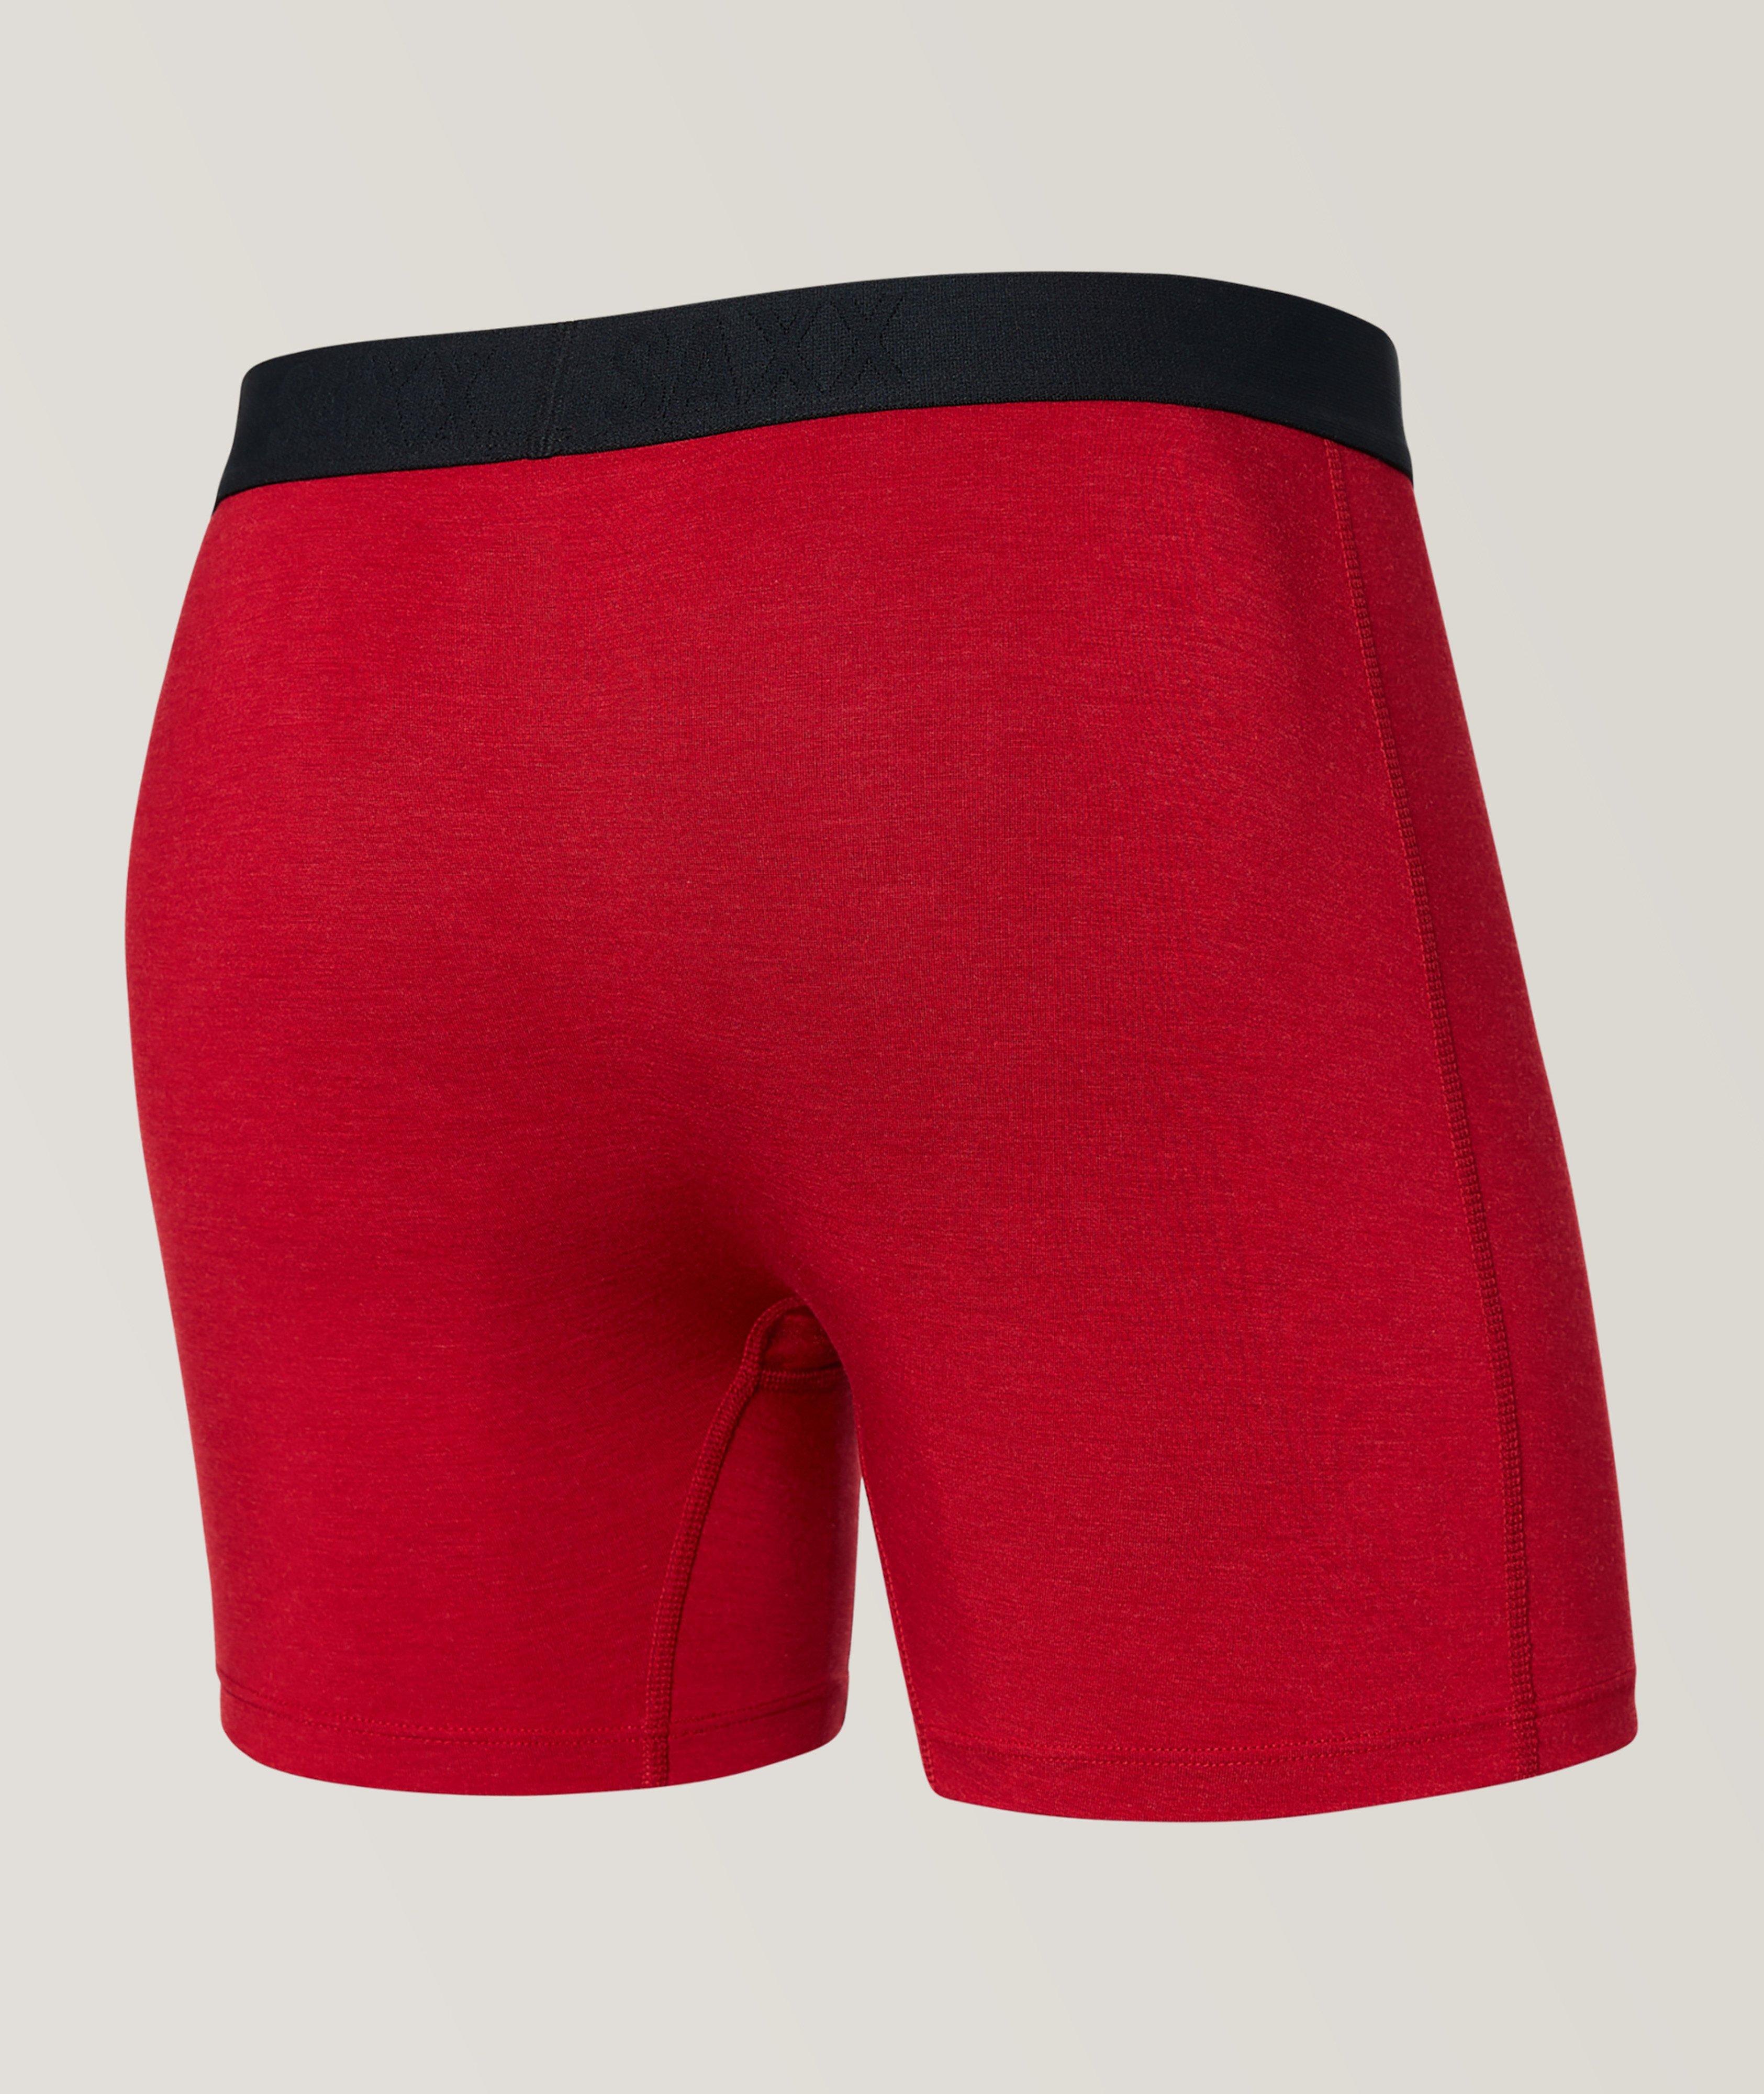 SAXX Vibe Super Soft Boxer Briefs, Underwear